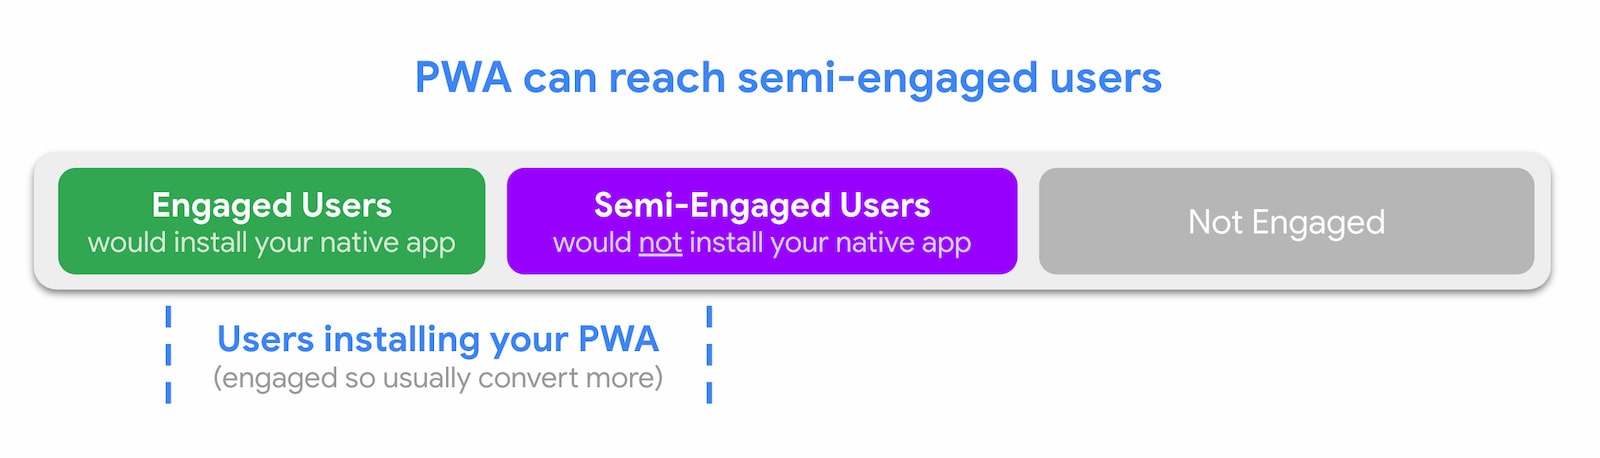 PWA ها می توانند به کاربران نیمه درگیر دسترسی پیدا کنند.